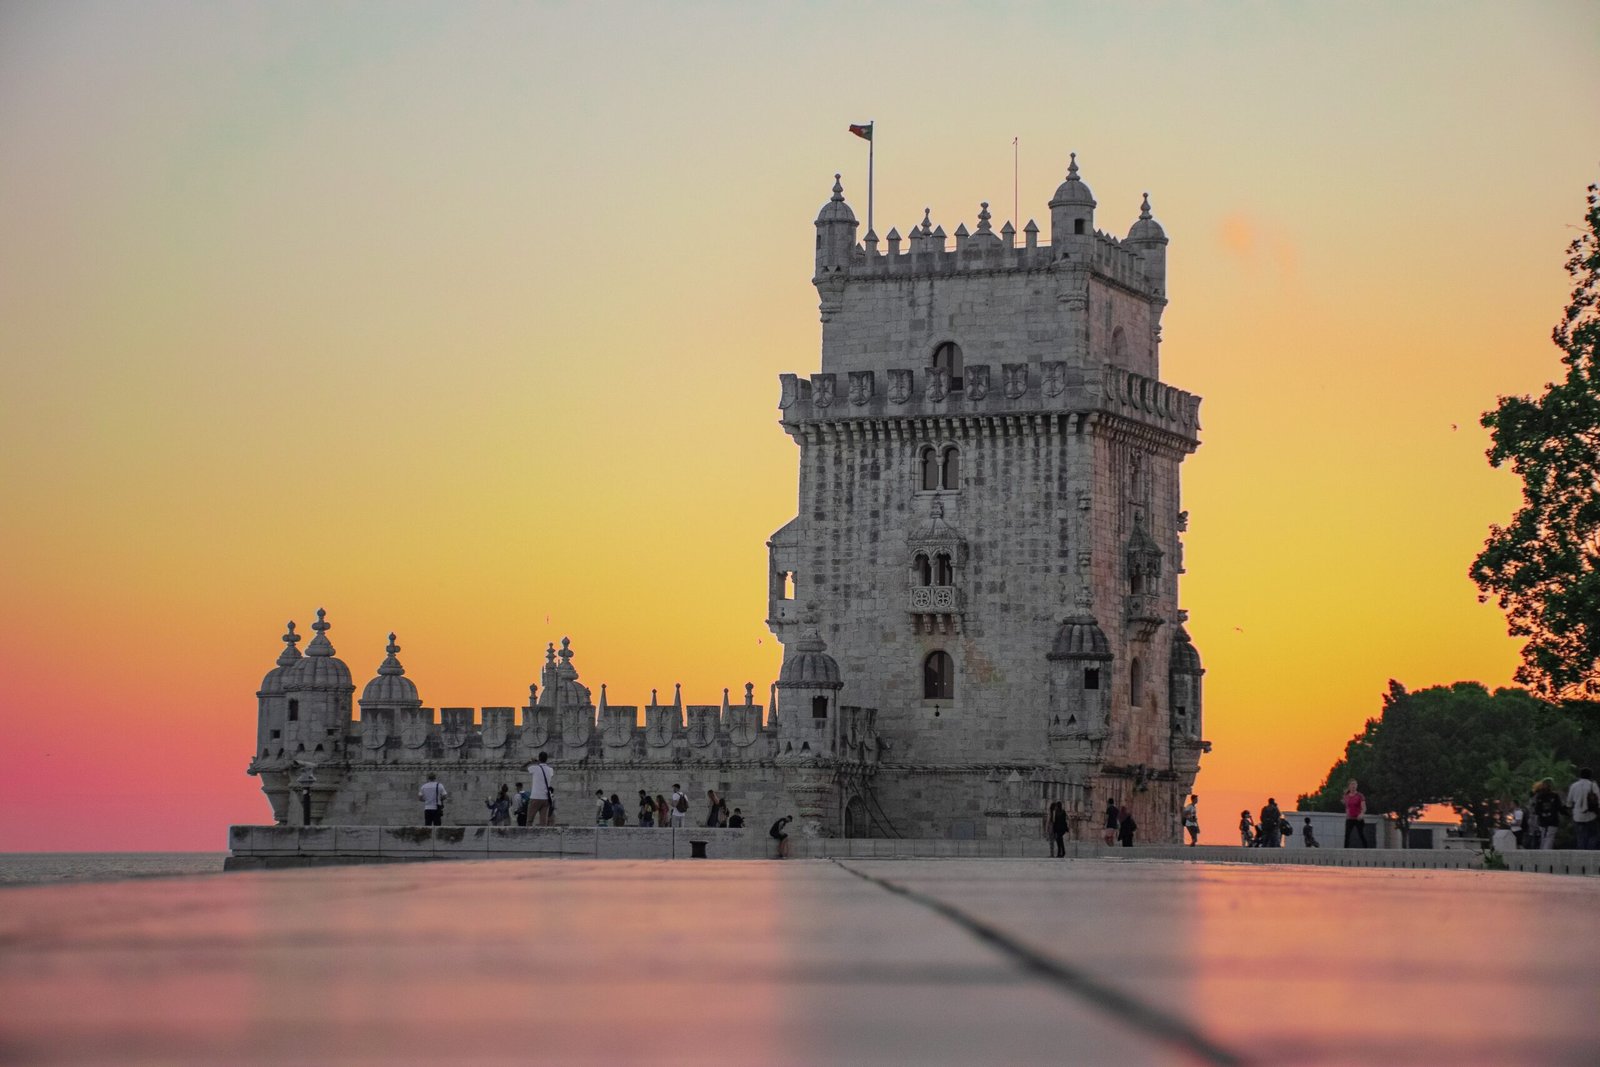 Vagas de Emprego em Lisboa: Encontre a Oportunidade Ideal